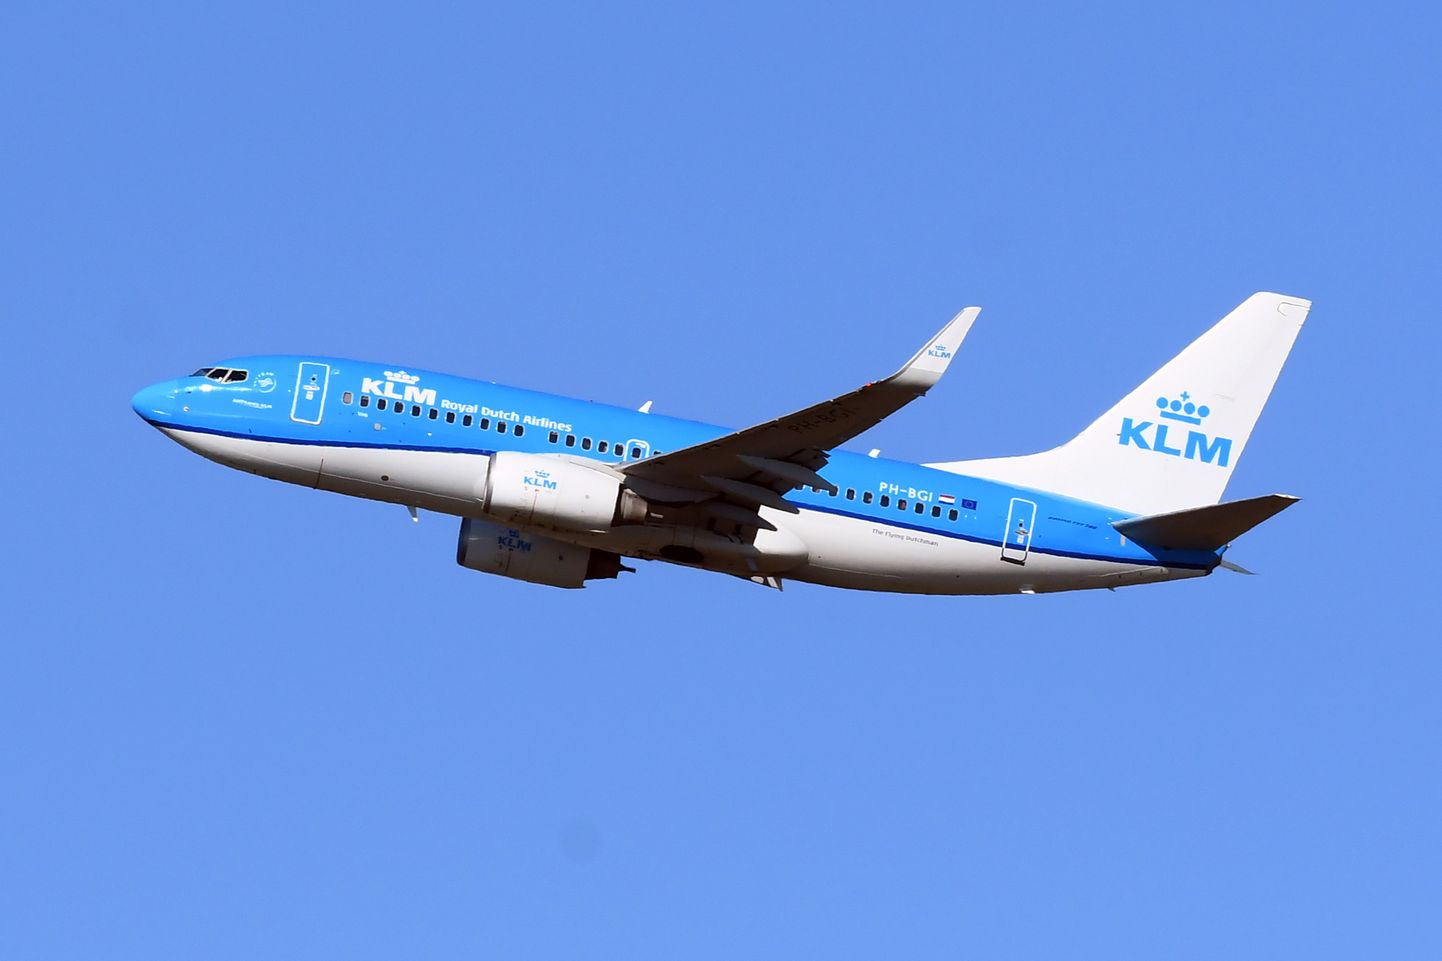 KLM lennukompanii lennuk Boeing 737-300.